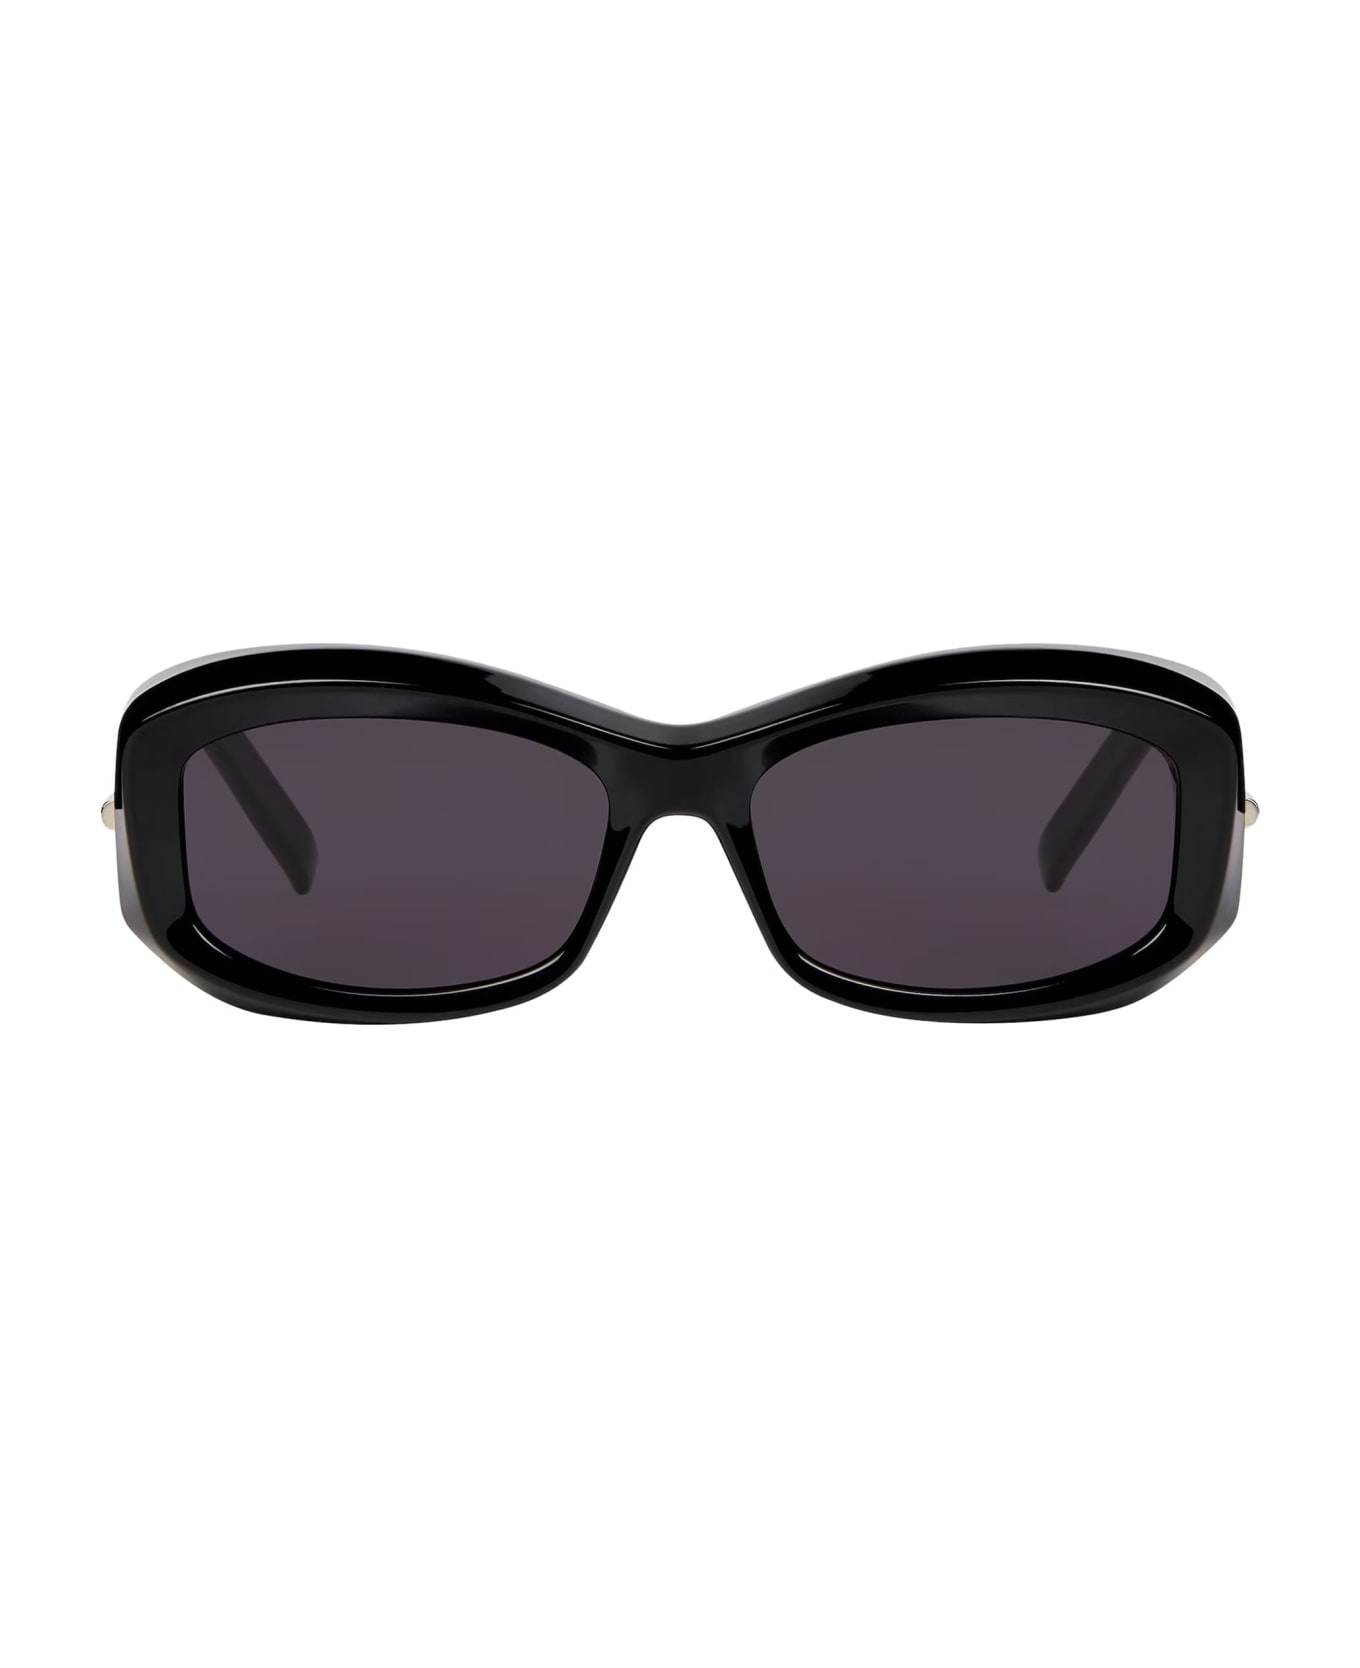 Givenchy Eyewear Gv40044u - Shiny Black Sunglasses - Black